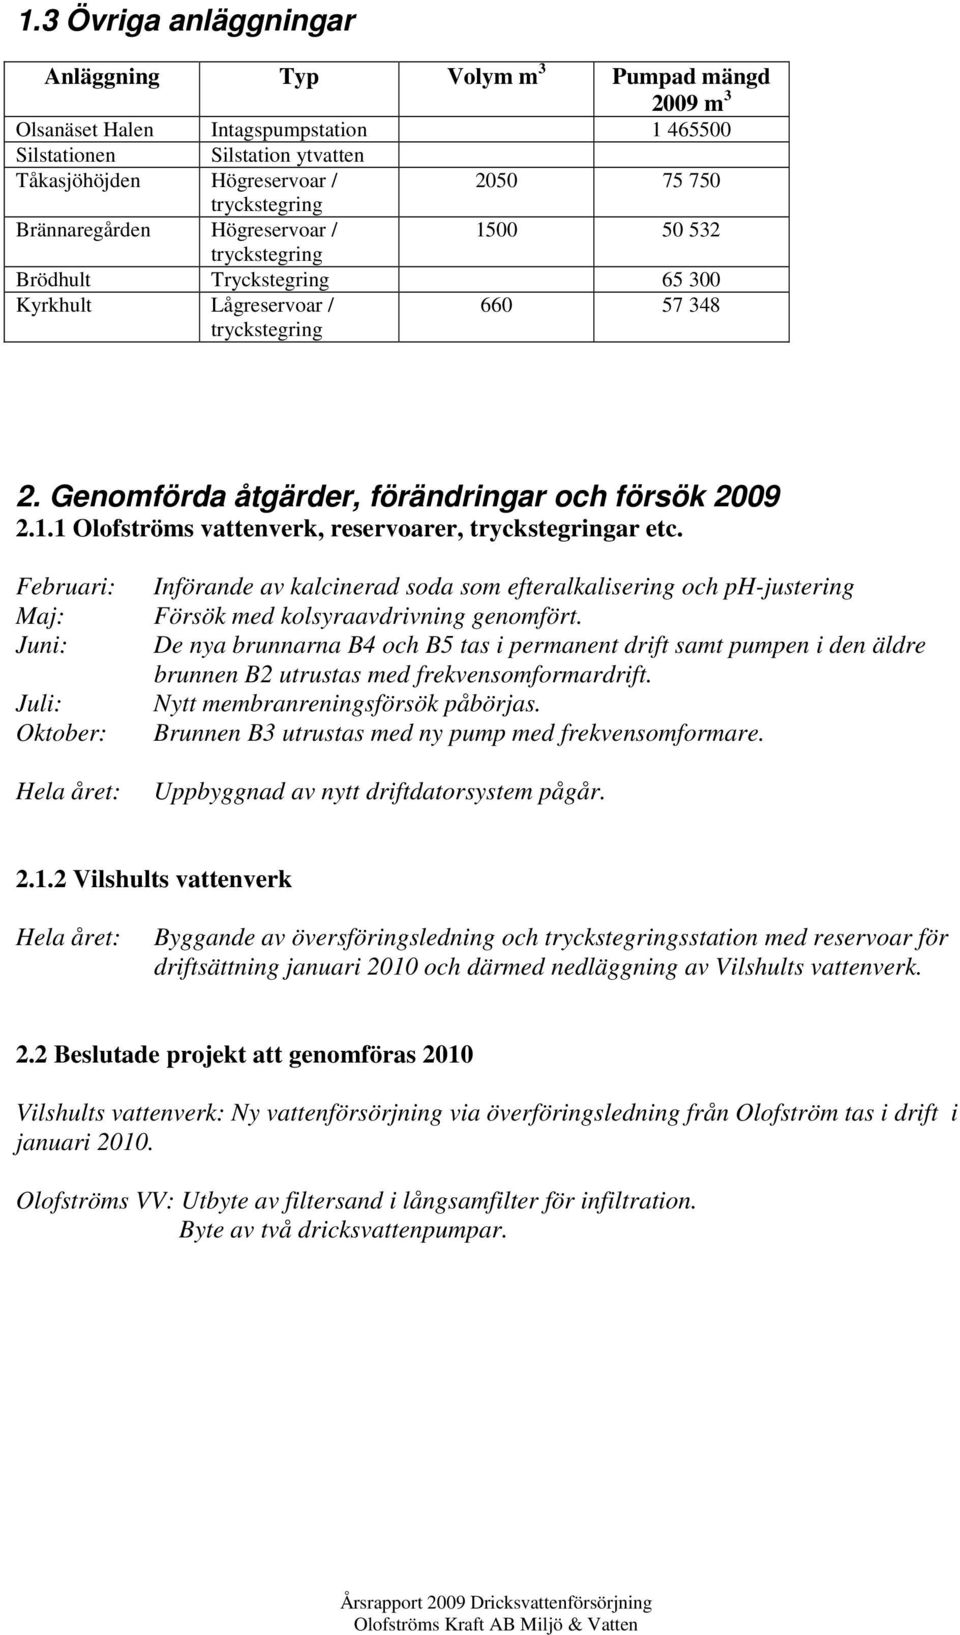 Genomförda åtgärder, förändringar och försök 2009 2.1.1 Olofströms vattenverk, reservoarer, tryckstegringar etc.